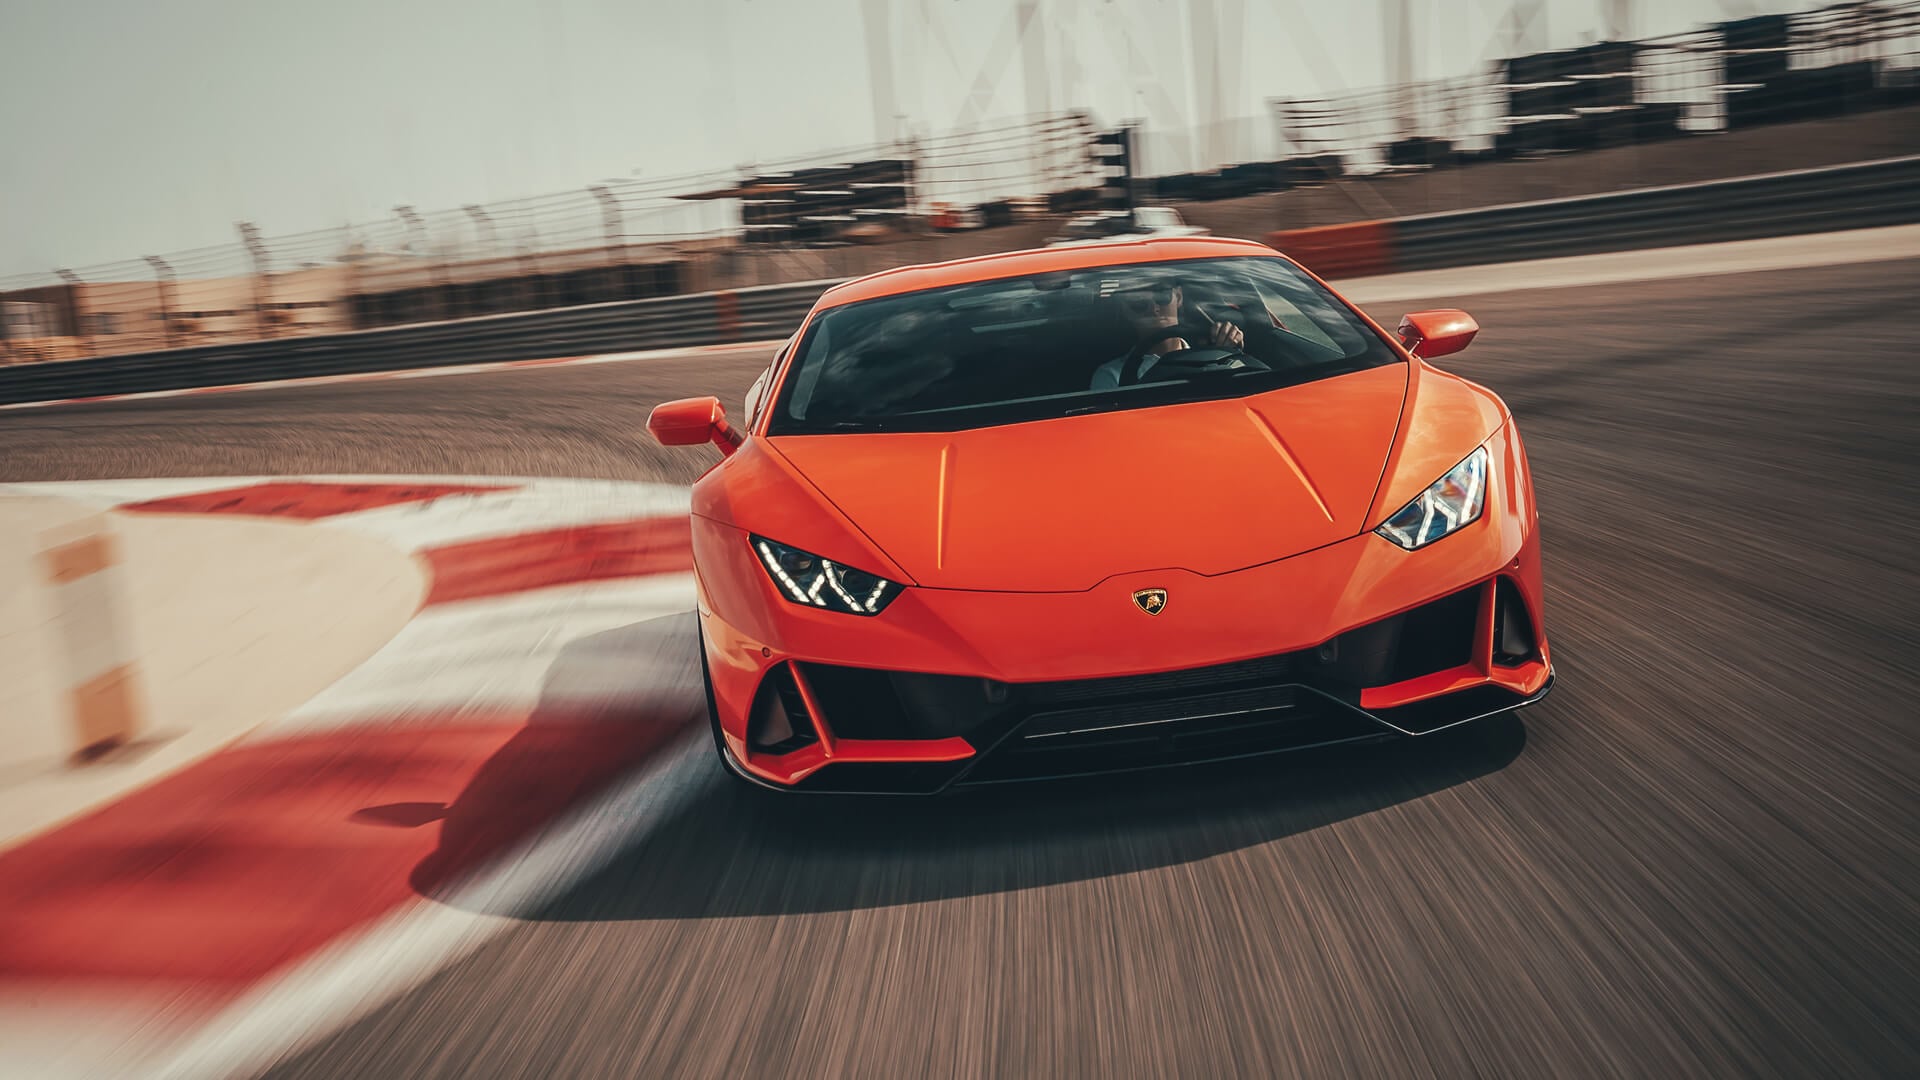 Lamborghini Huracán naranja tomando una curva. Se encuentra cuarto en nuestro top coches deportivos